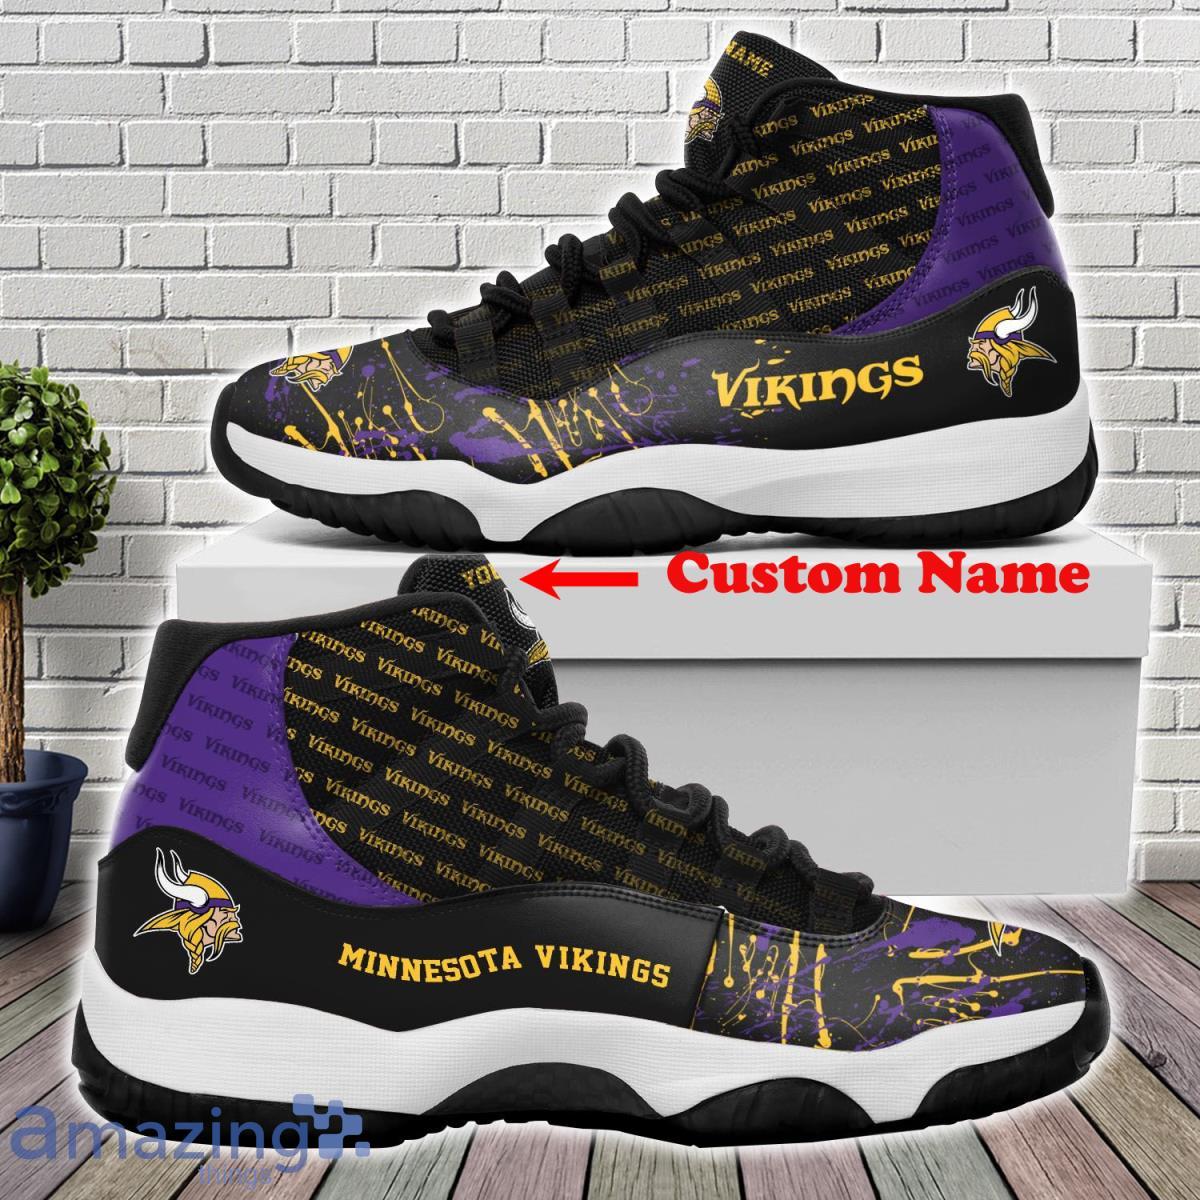 Custom Name October King Air Gold Jordan 13 Sneaker Shoes - Banantees